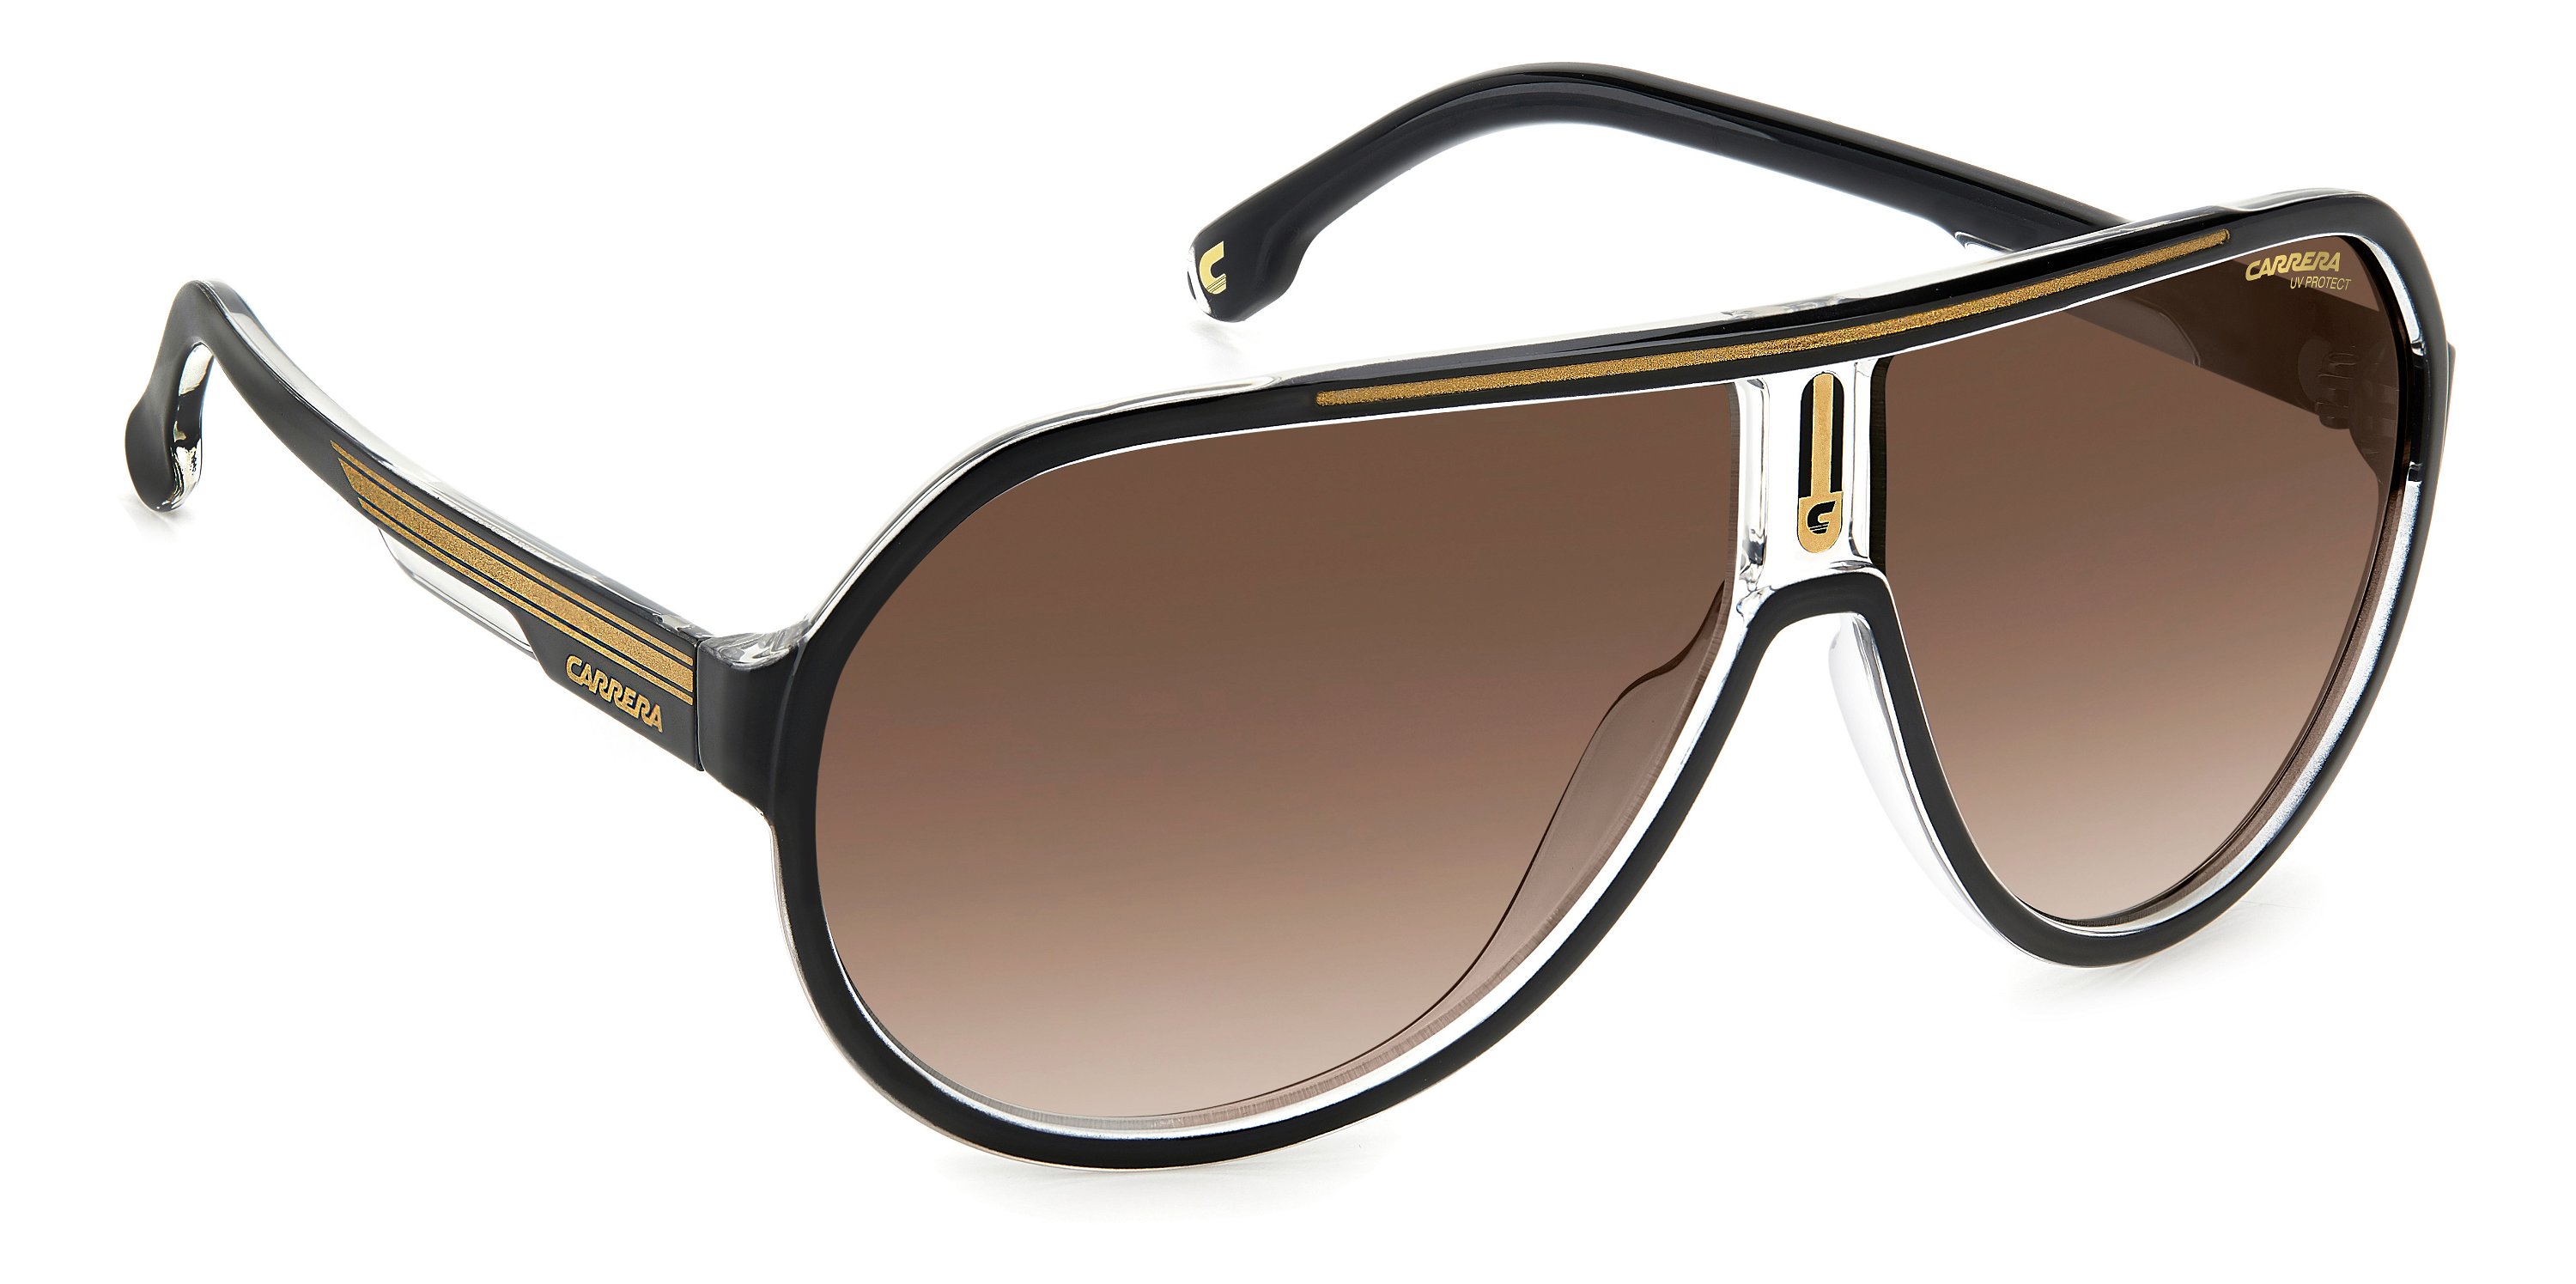 Carrera Sonnenbrille 1057/S 2M2 schwarz gold